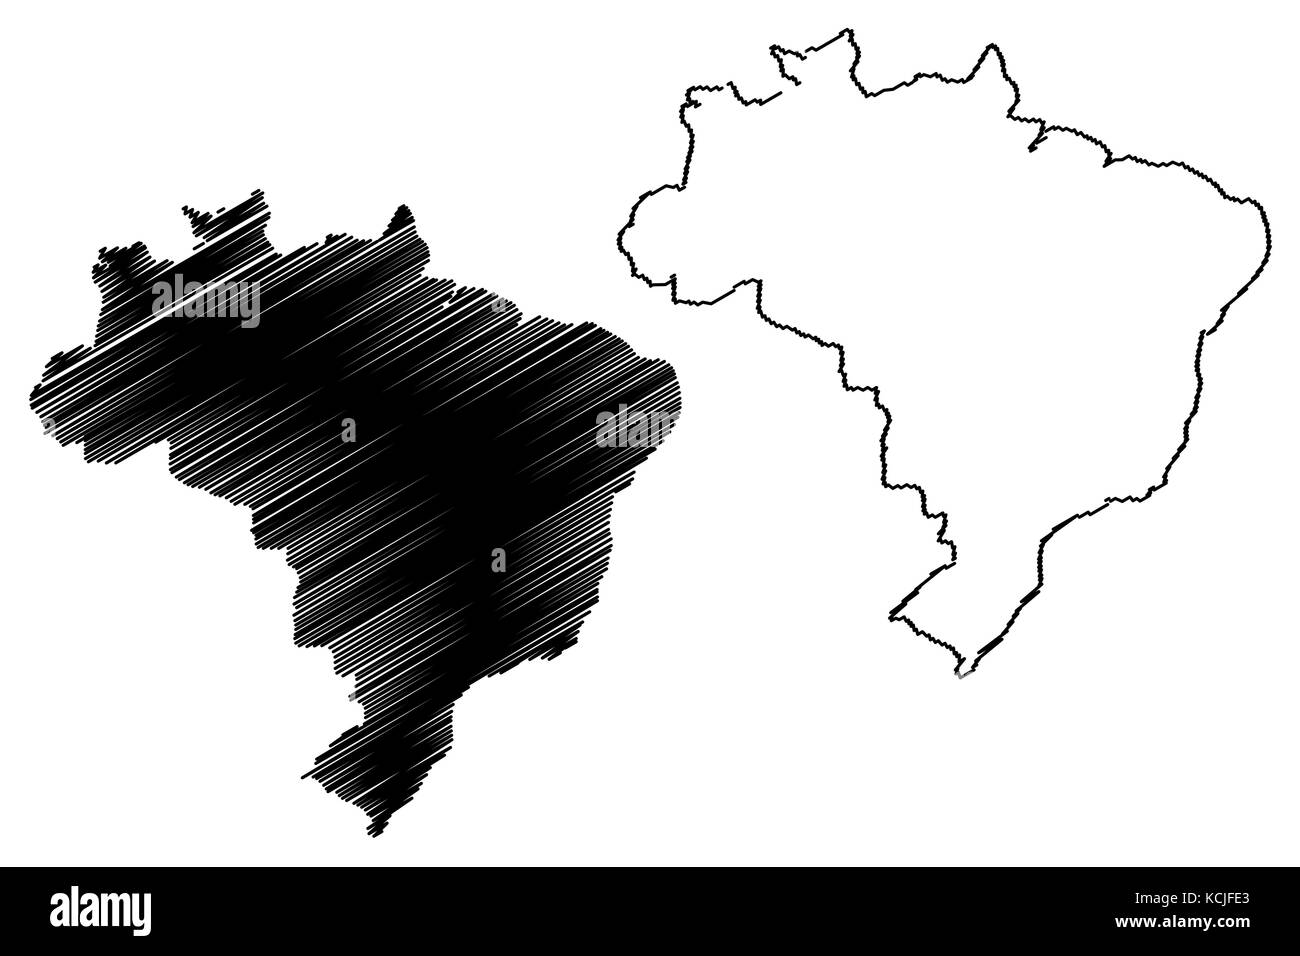 Brésil site vector illustration, scribble sketch brazilia Illustration de Vecteur